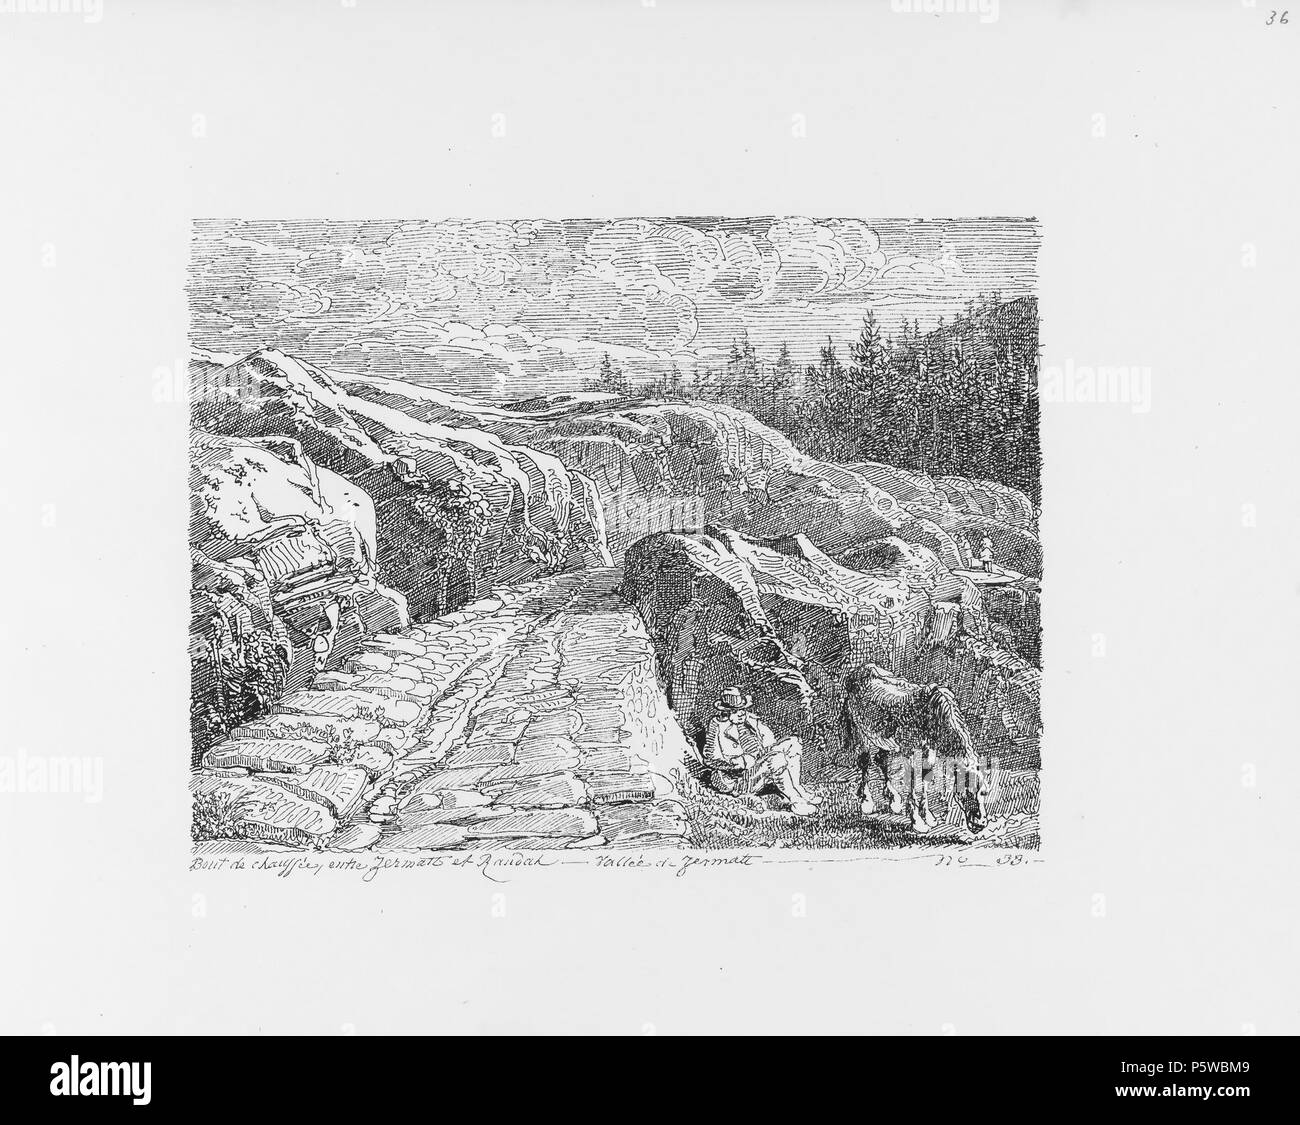 322 CH-NB-Voyage autour du Mont-Blanc dans les vallées d'Hérens de Zermatt et au Grimsel 1843-nbdig-19161-035 Stock Photo